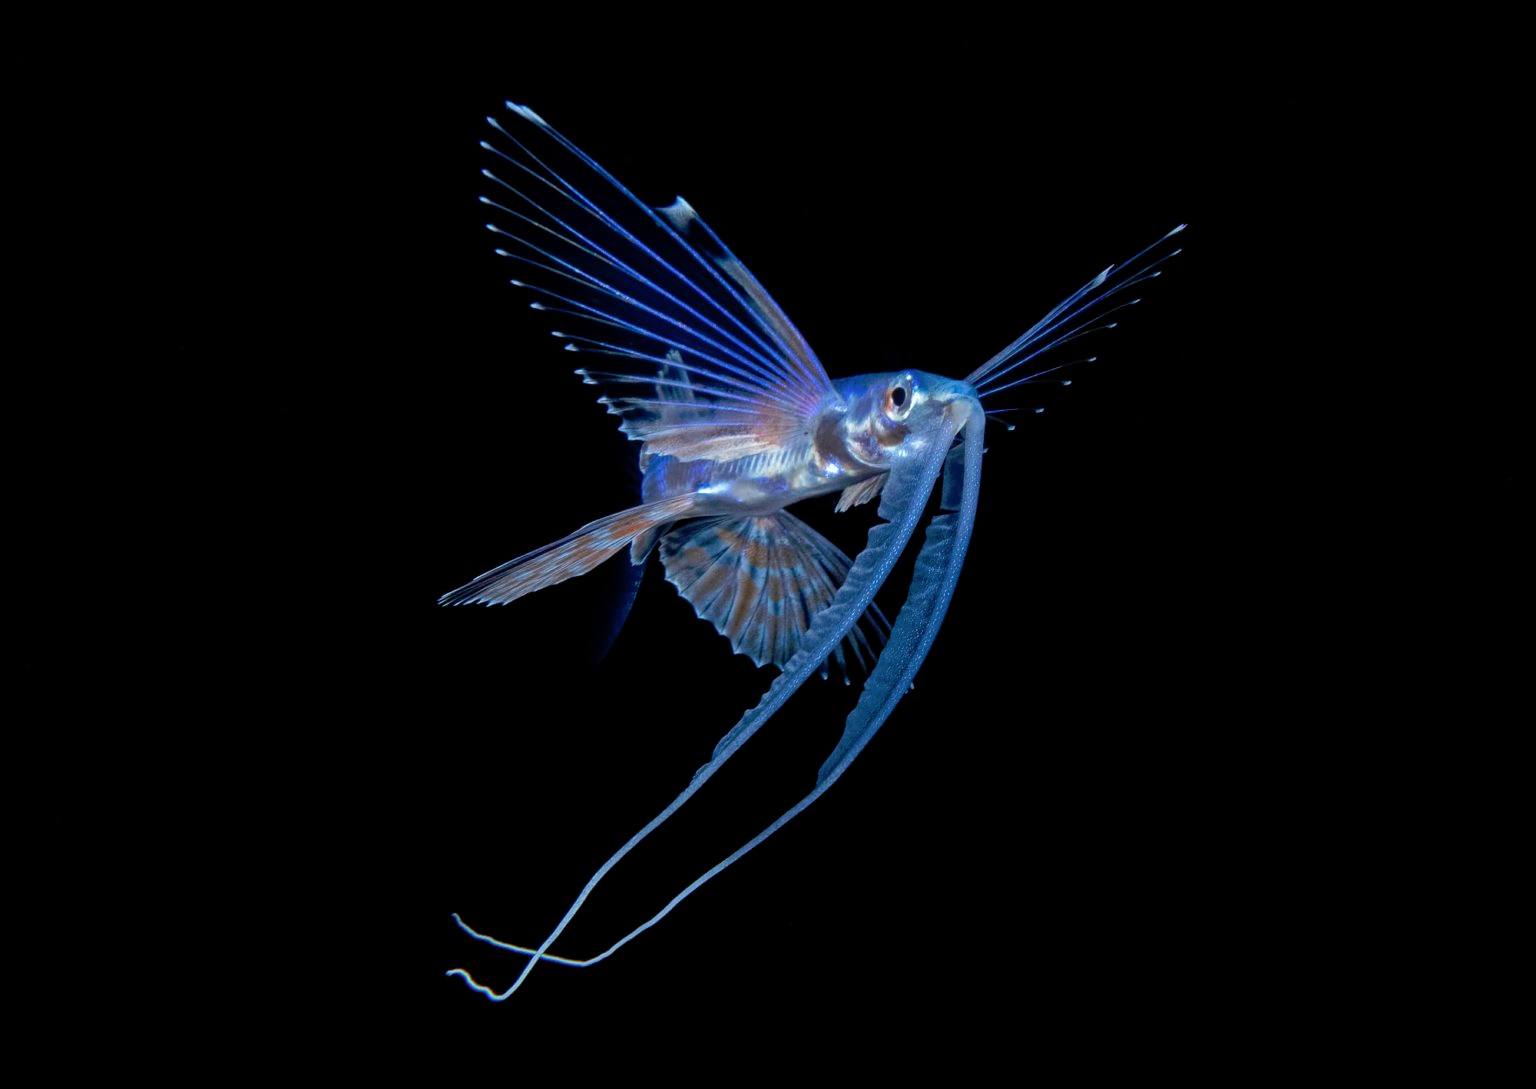 Les incroyables clichés de larves de poissons par Steven Kovacs